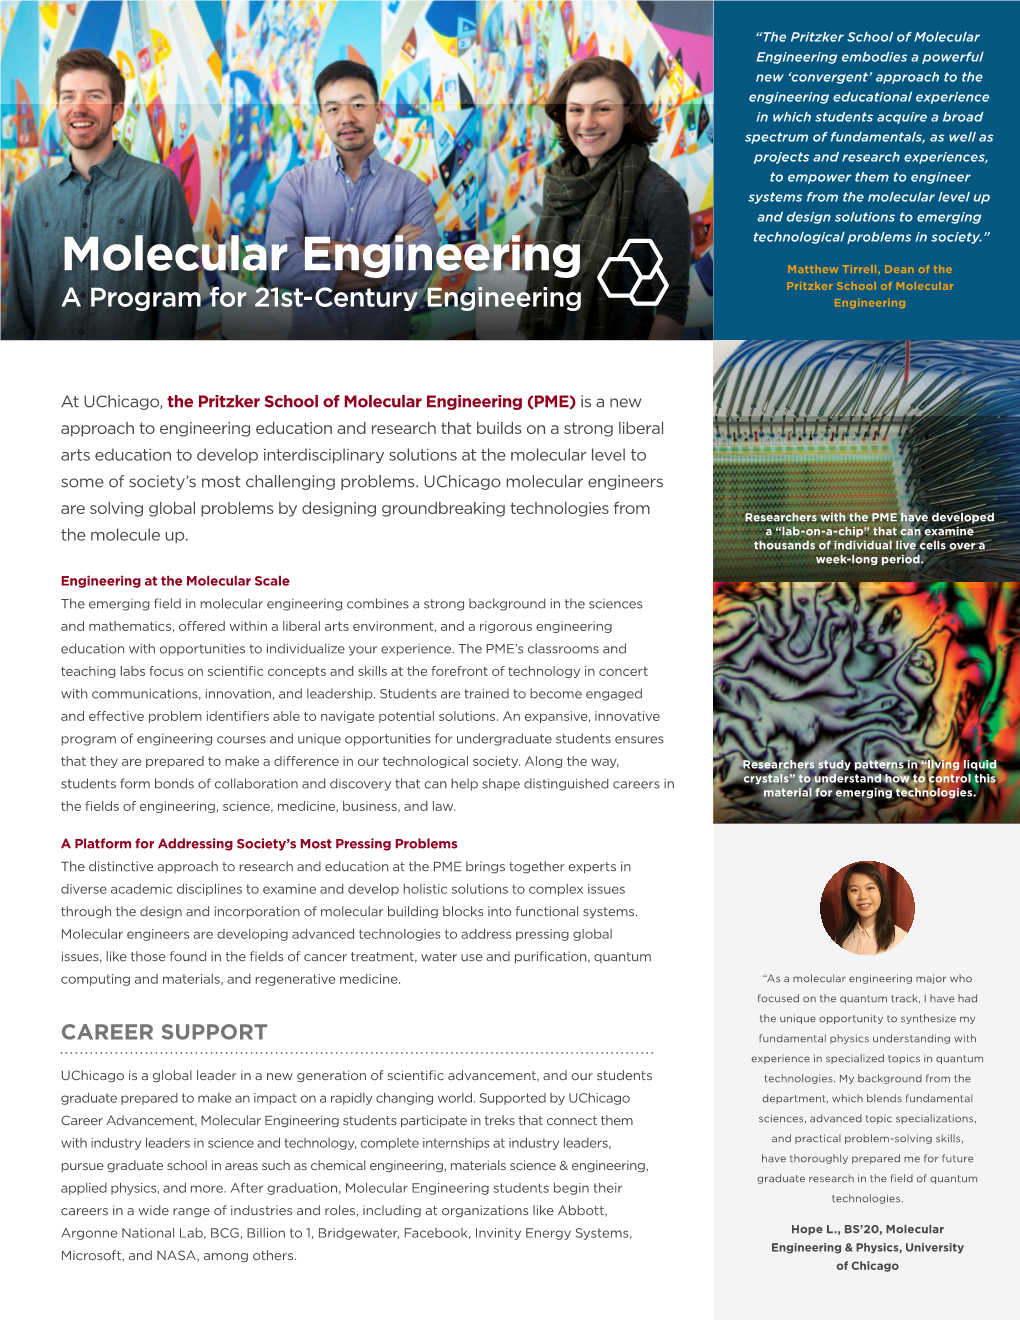 Pritzker School of Molecular Engineering